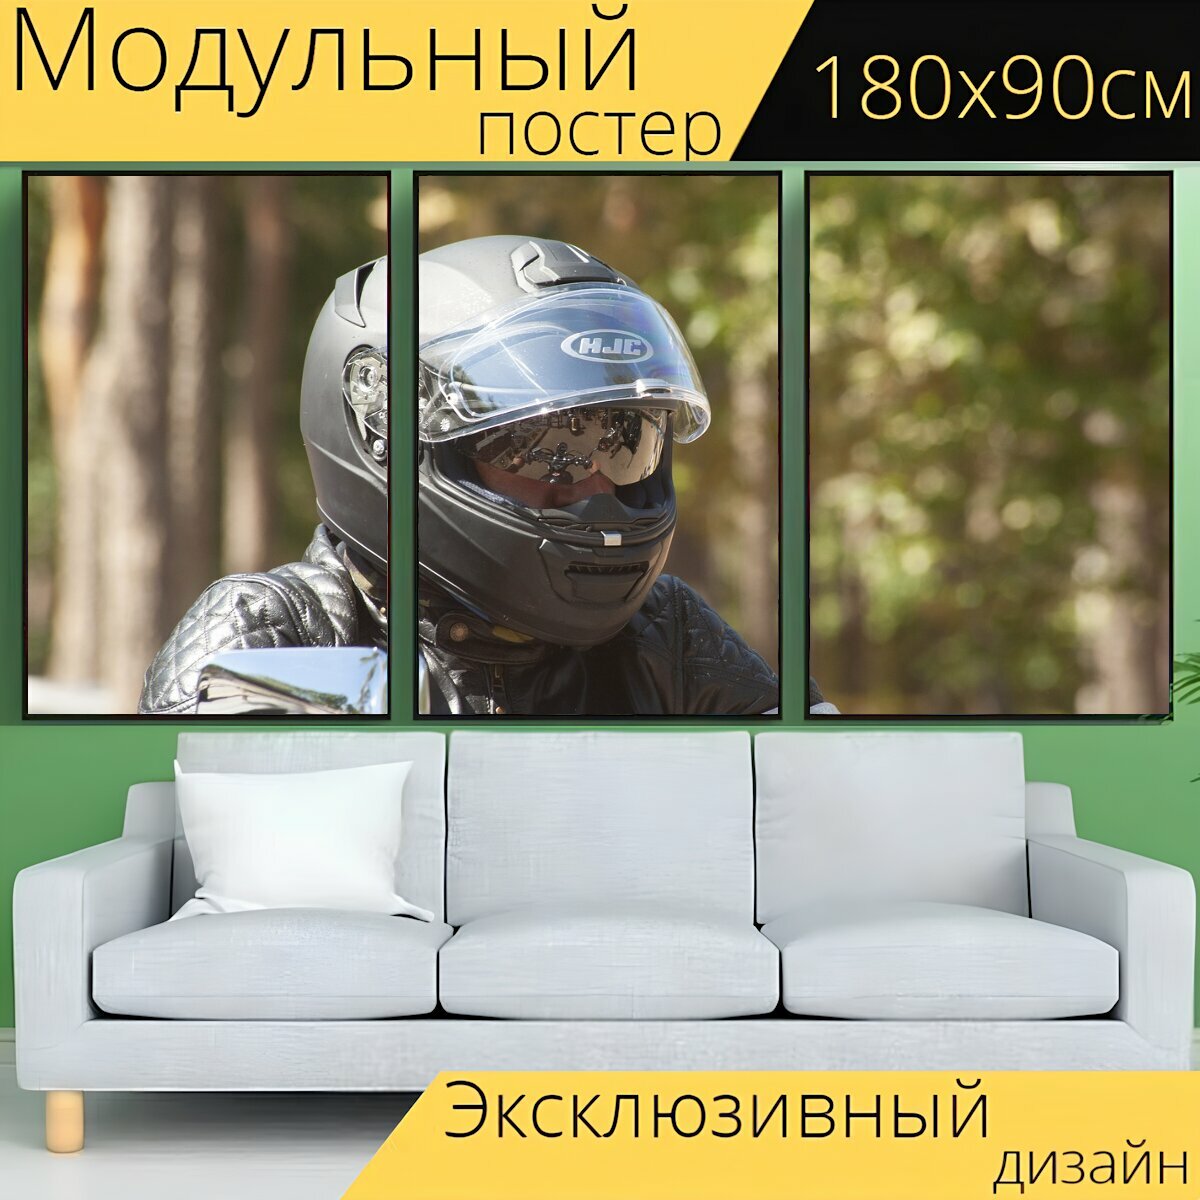 Модульный постер "Шлем, двигатель, мотоцикл" 180 x 90 см. для интерьера